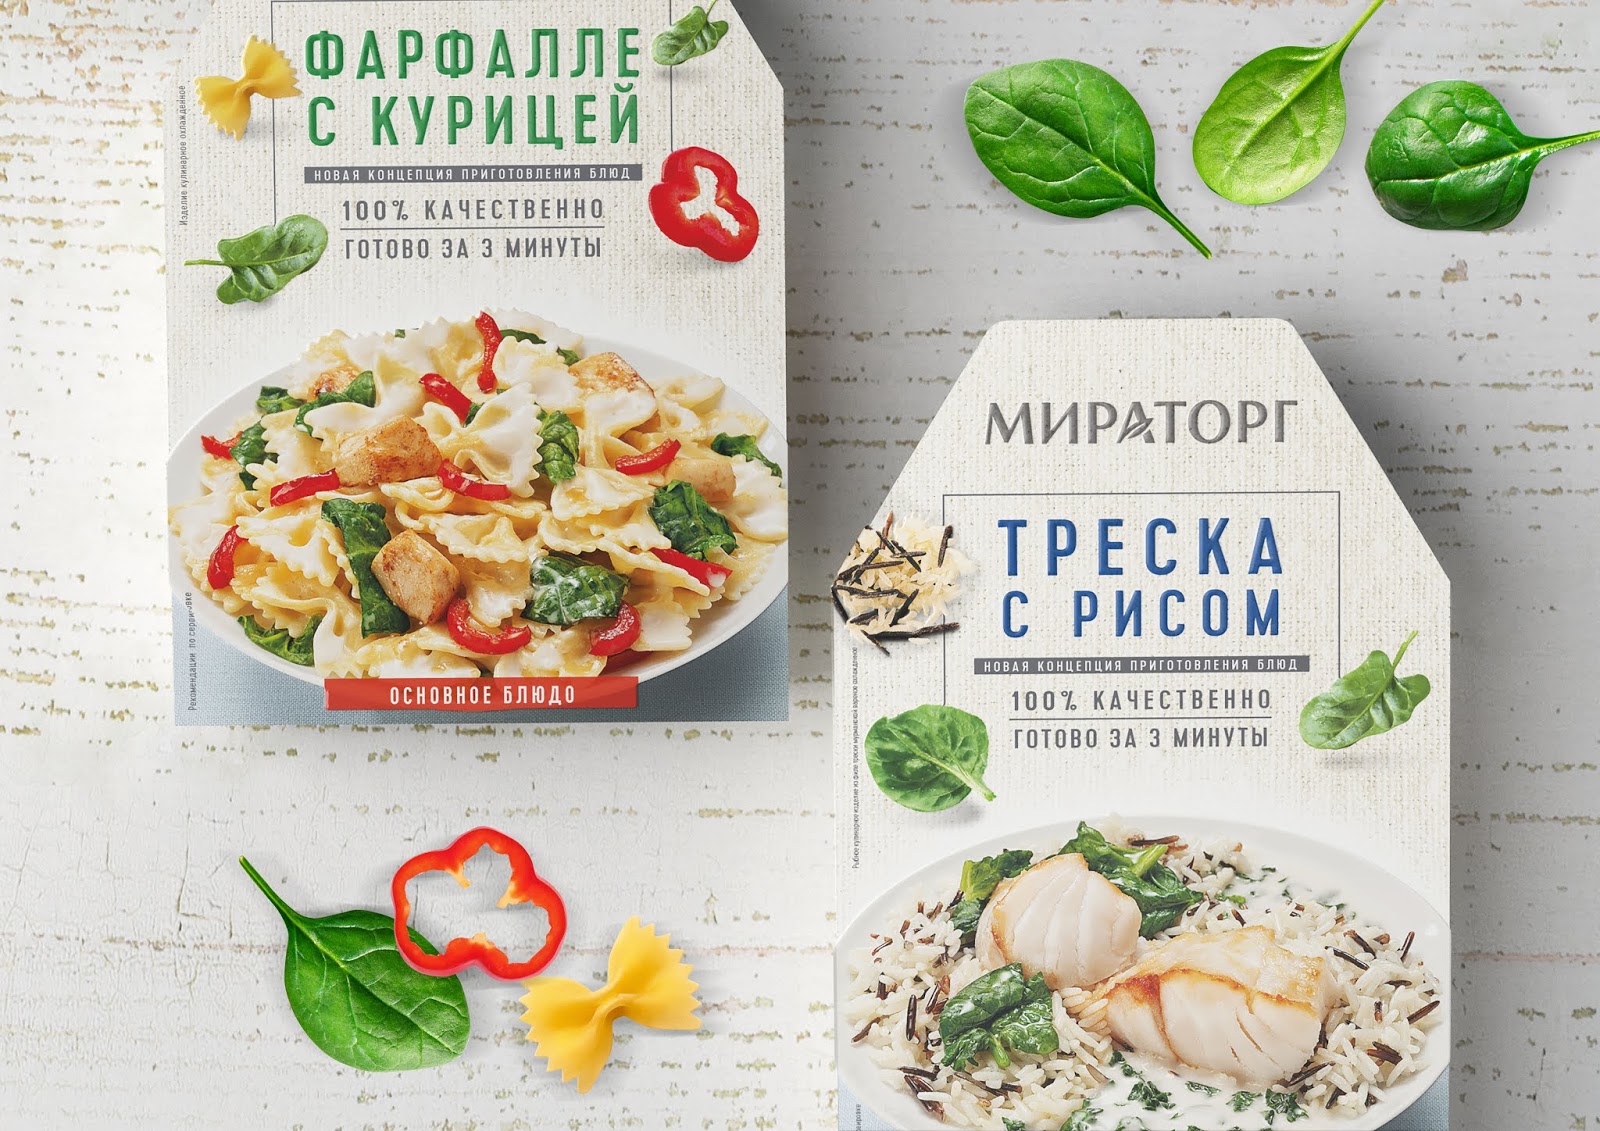 冷冻即食蔬菜西安oe欧亿体育app官方下载
品牌策划包装设计VI设计logo设计